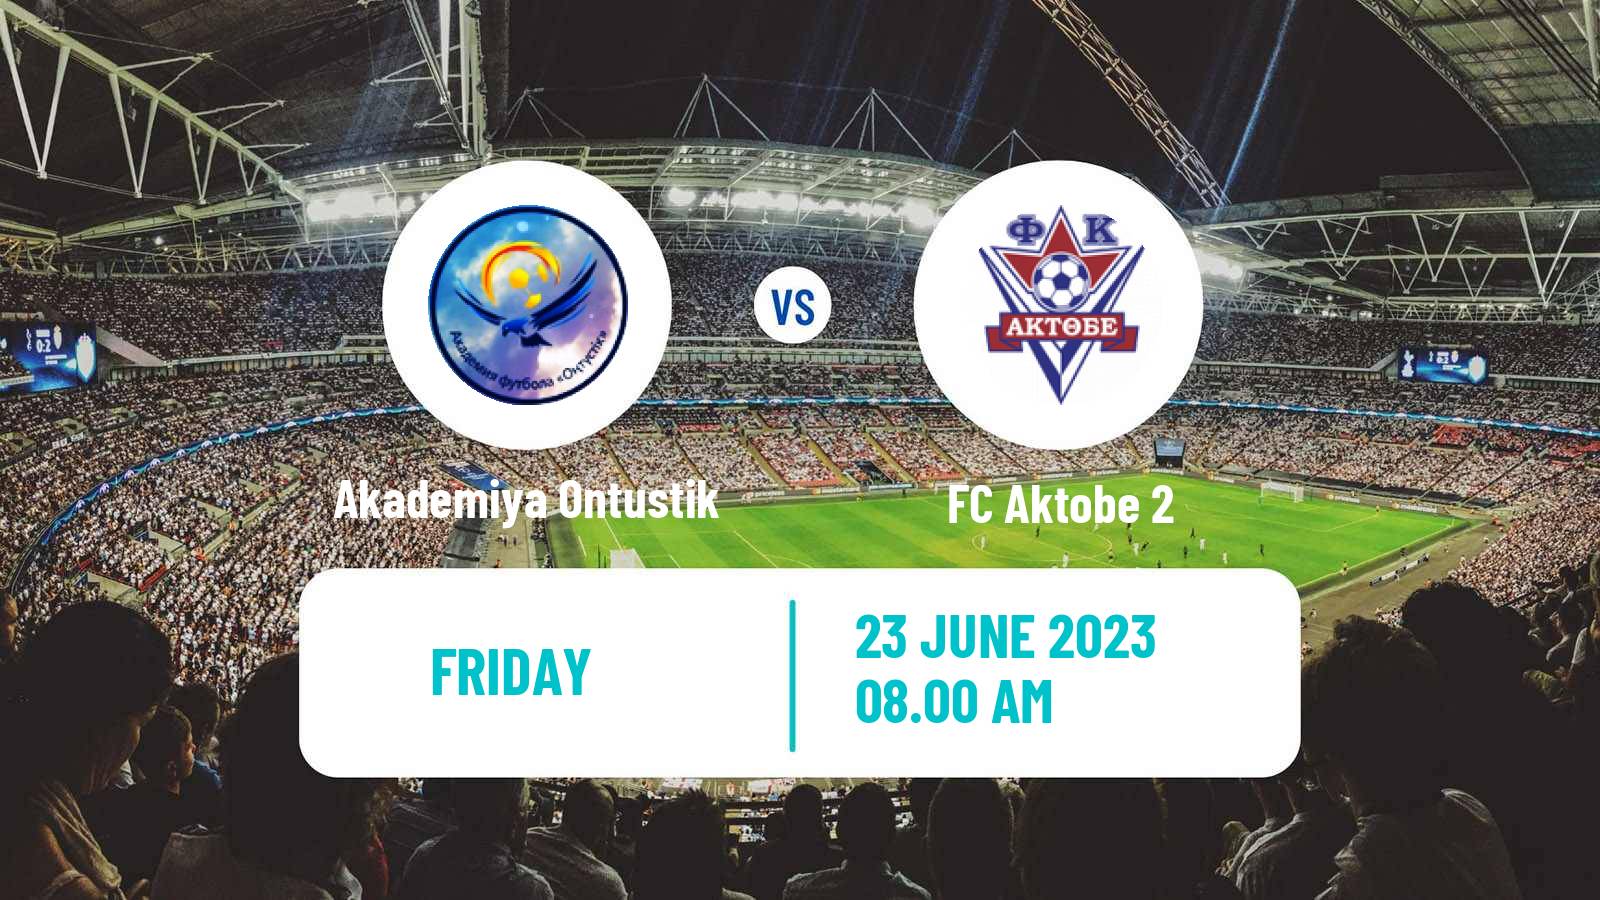 Soccer Kazakh First Division Akademiya Ontustik - Aktobe 2